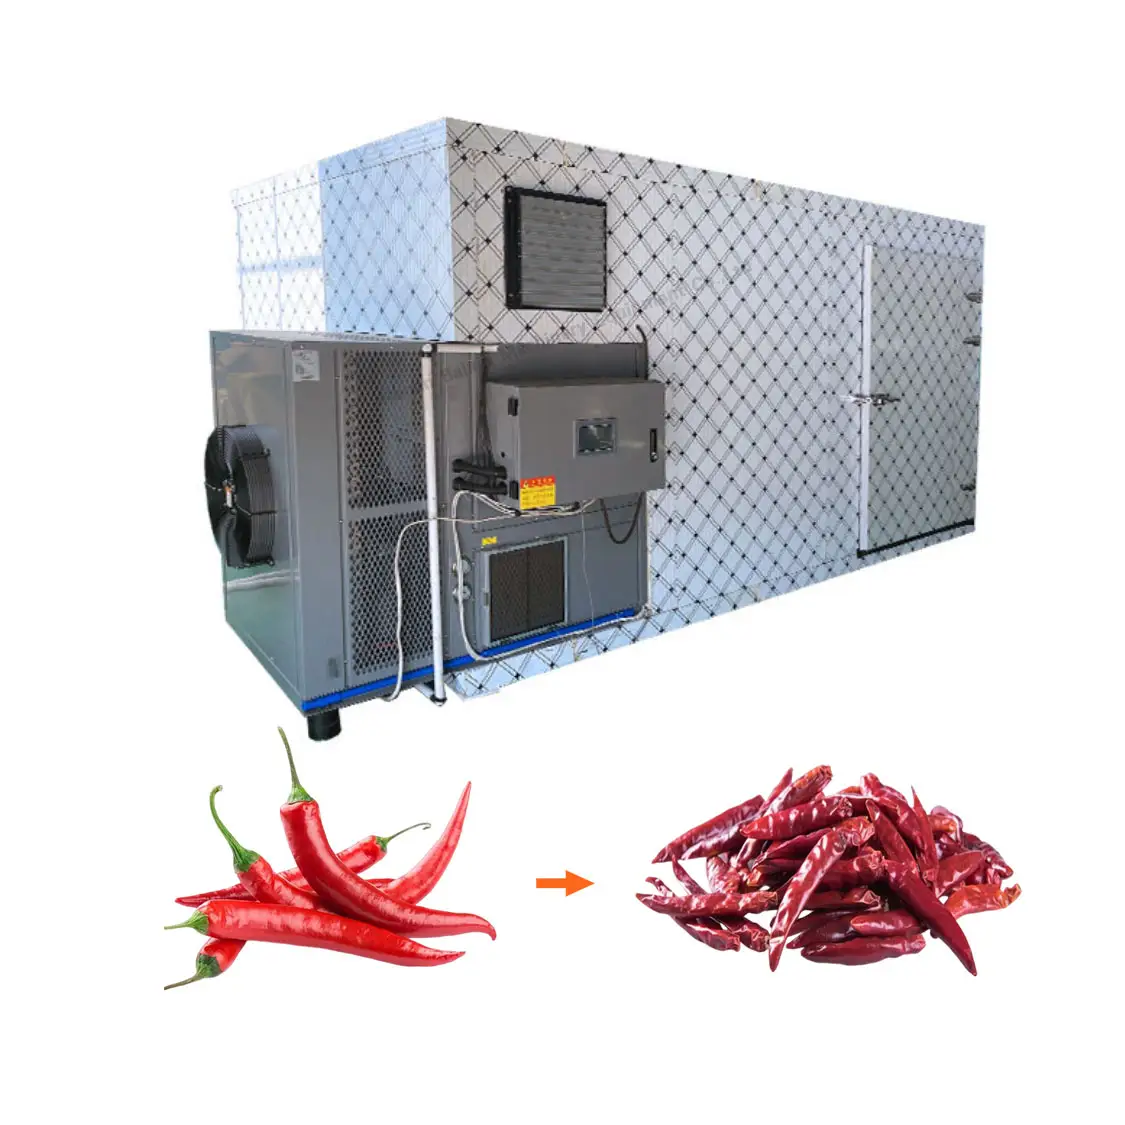 Endüstriyel elektrikli biber Moringa yaprak meyve sebze gıda kurutma kırmızı biber kurutma fırını